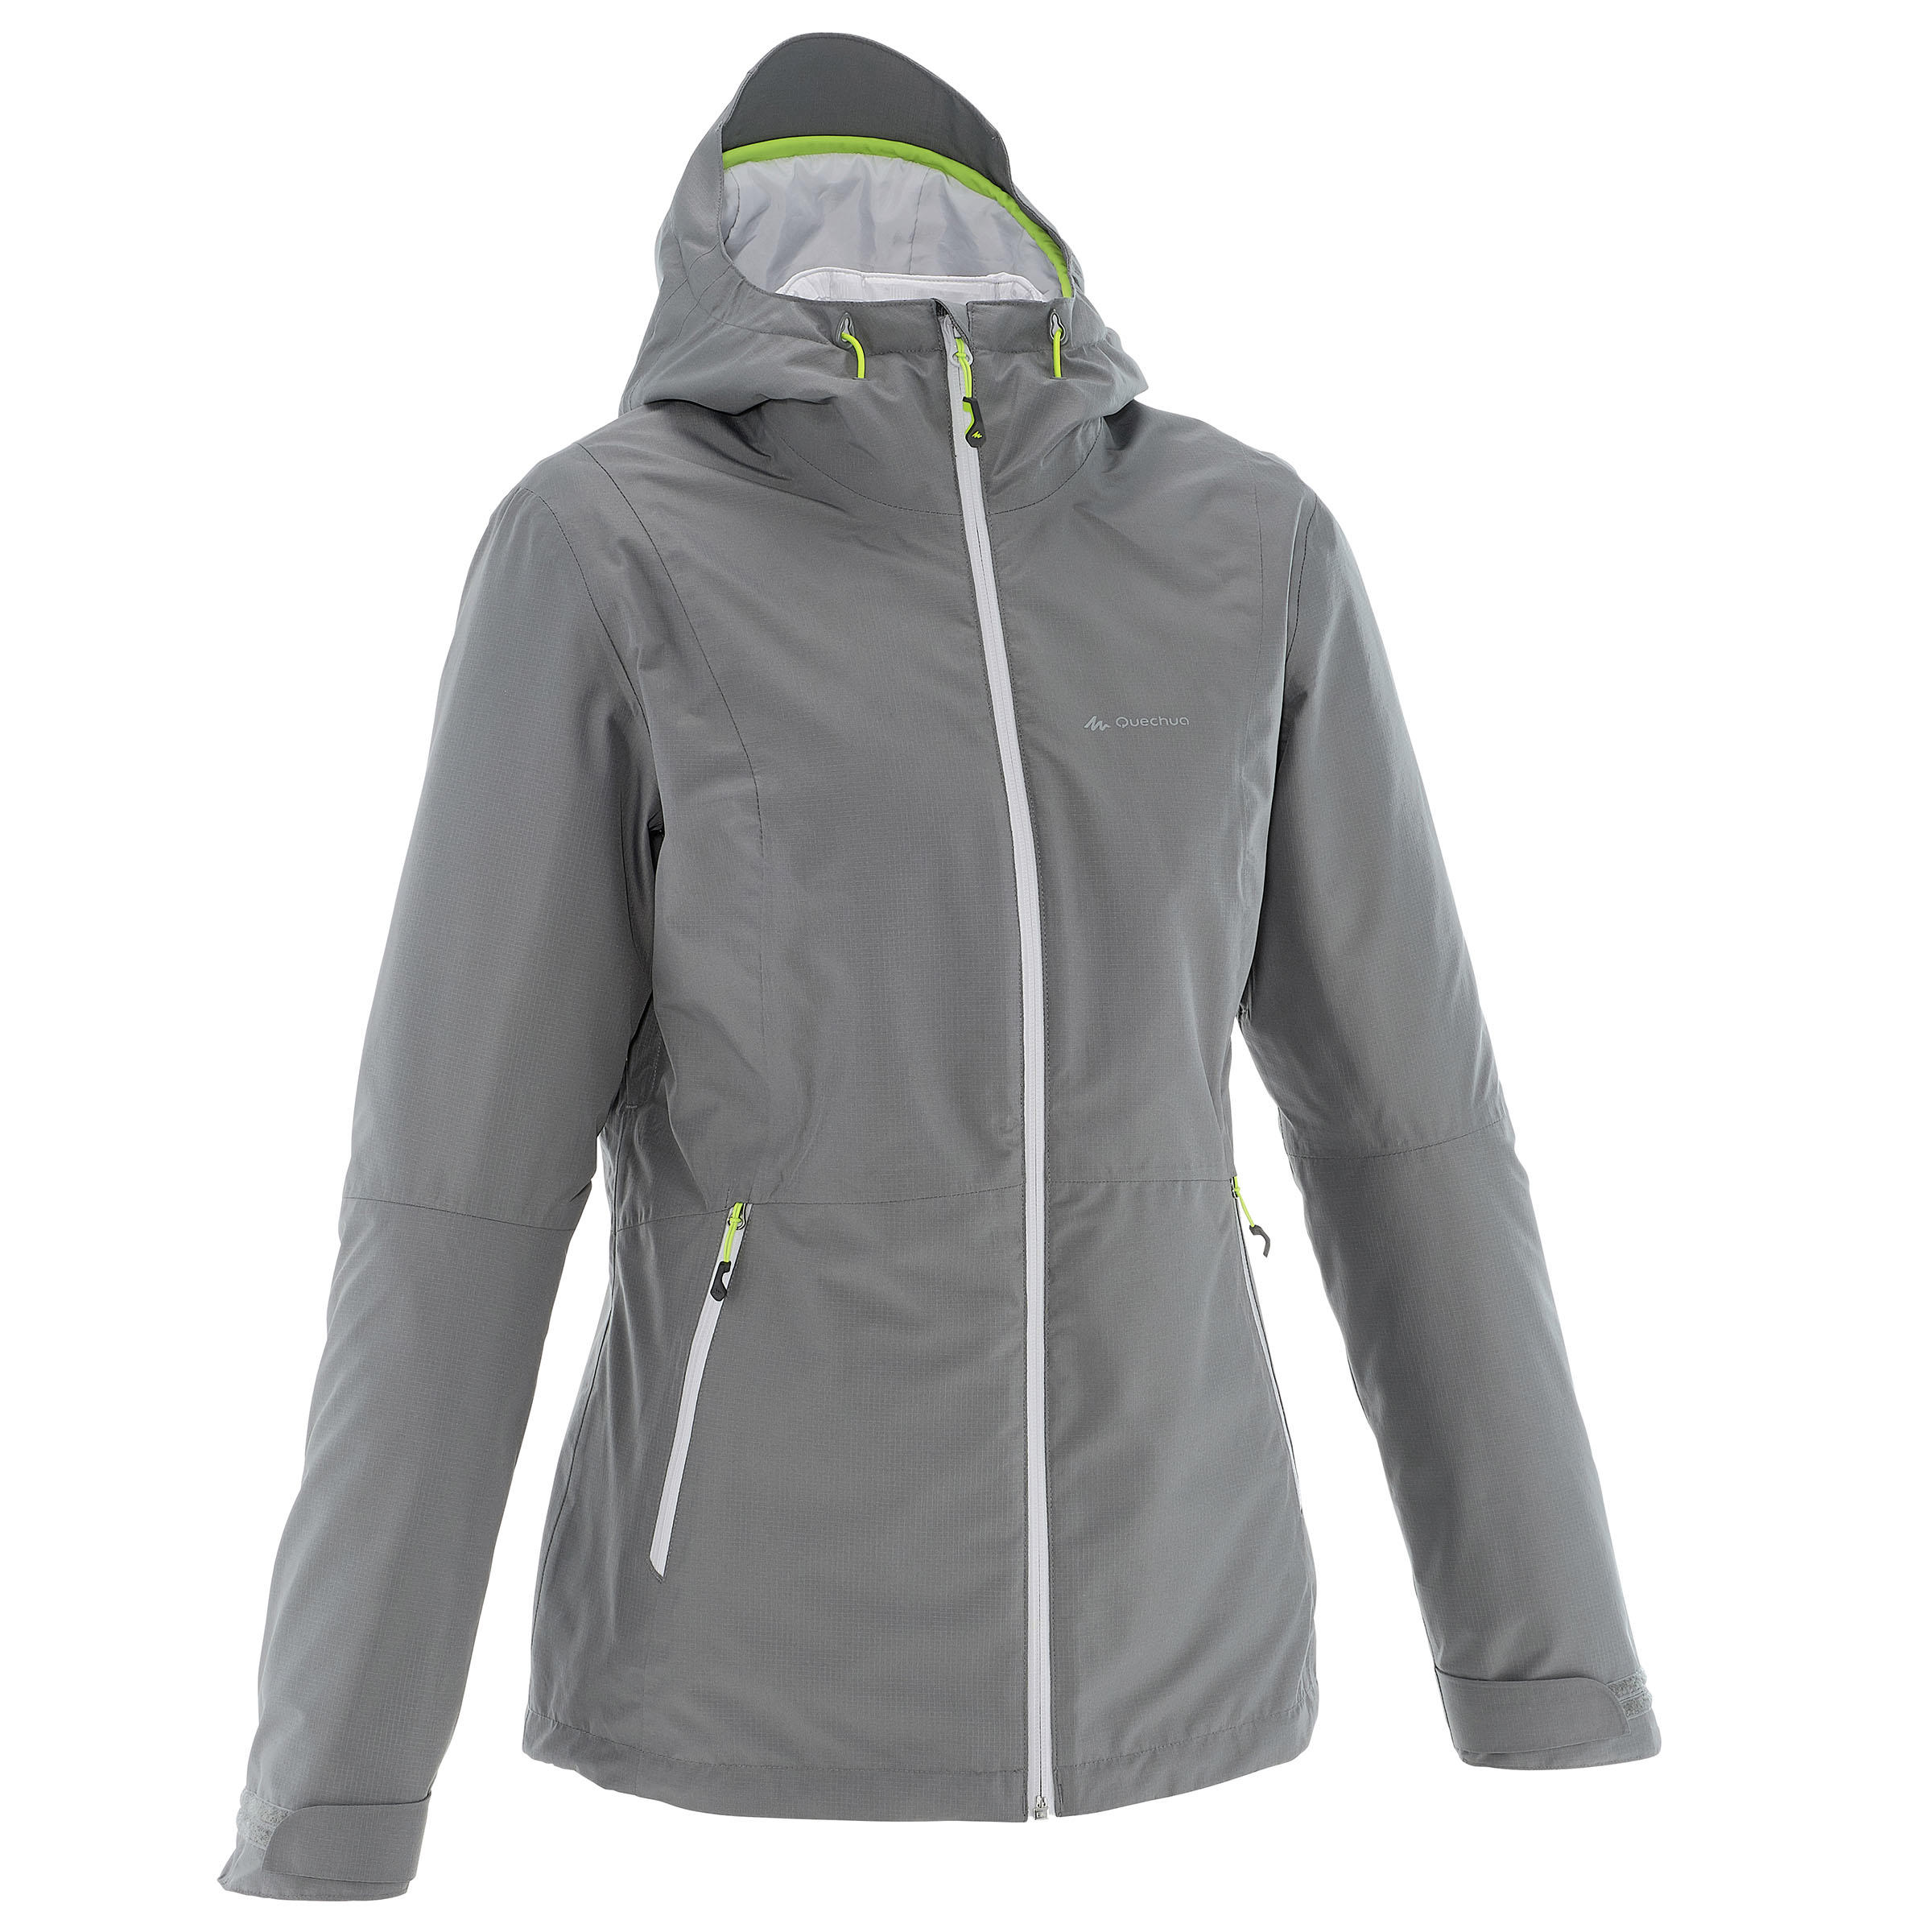 FORCLAZ Rainwarm 500 Women’s 3-in-1 Trekking Jacket - Light Grey